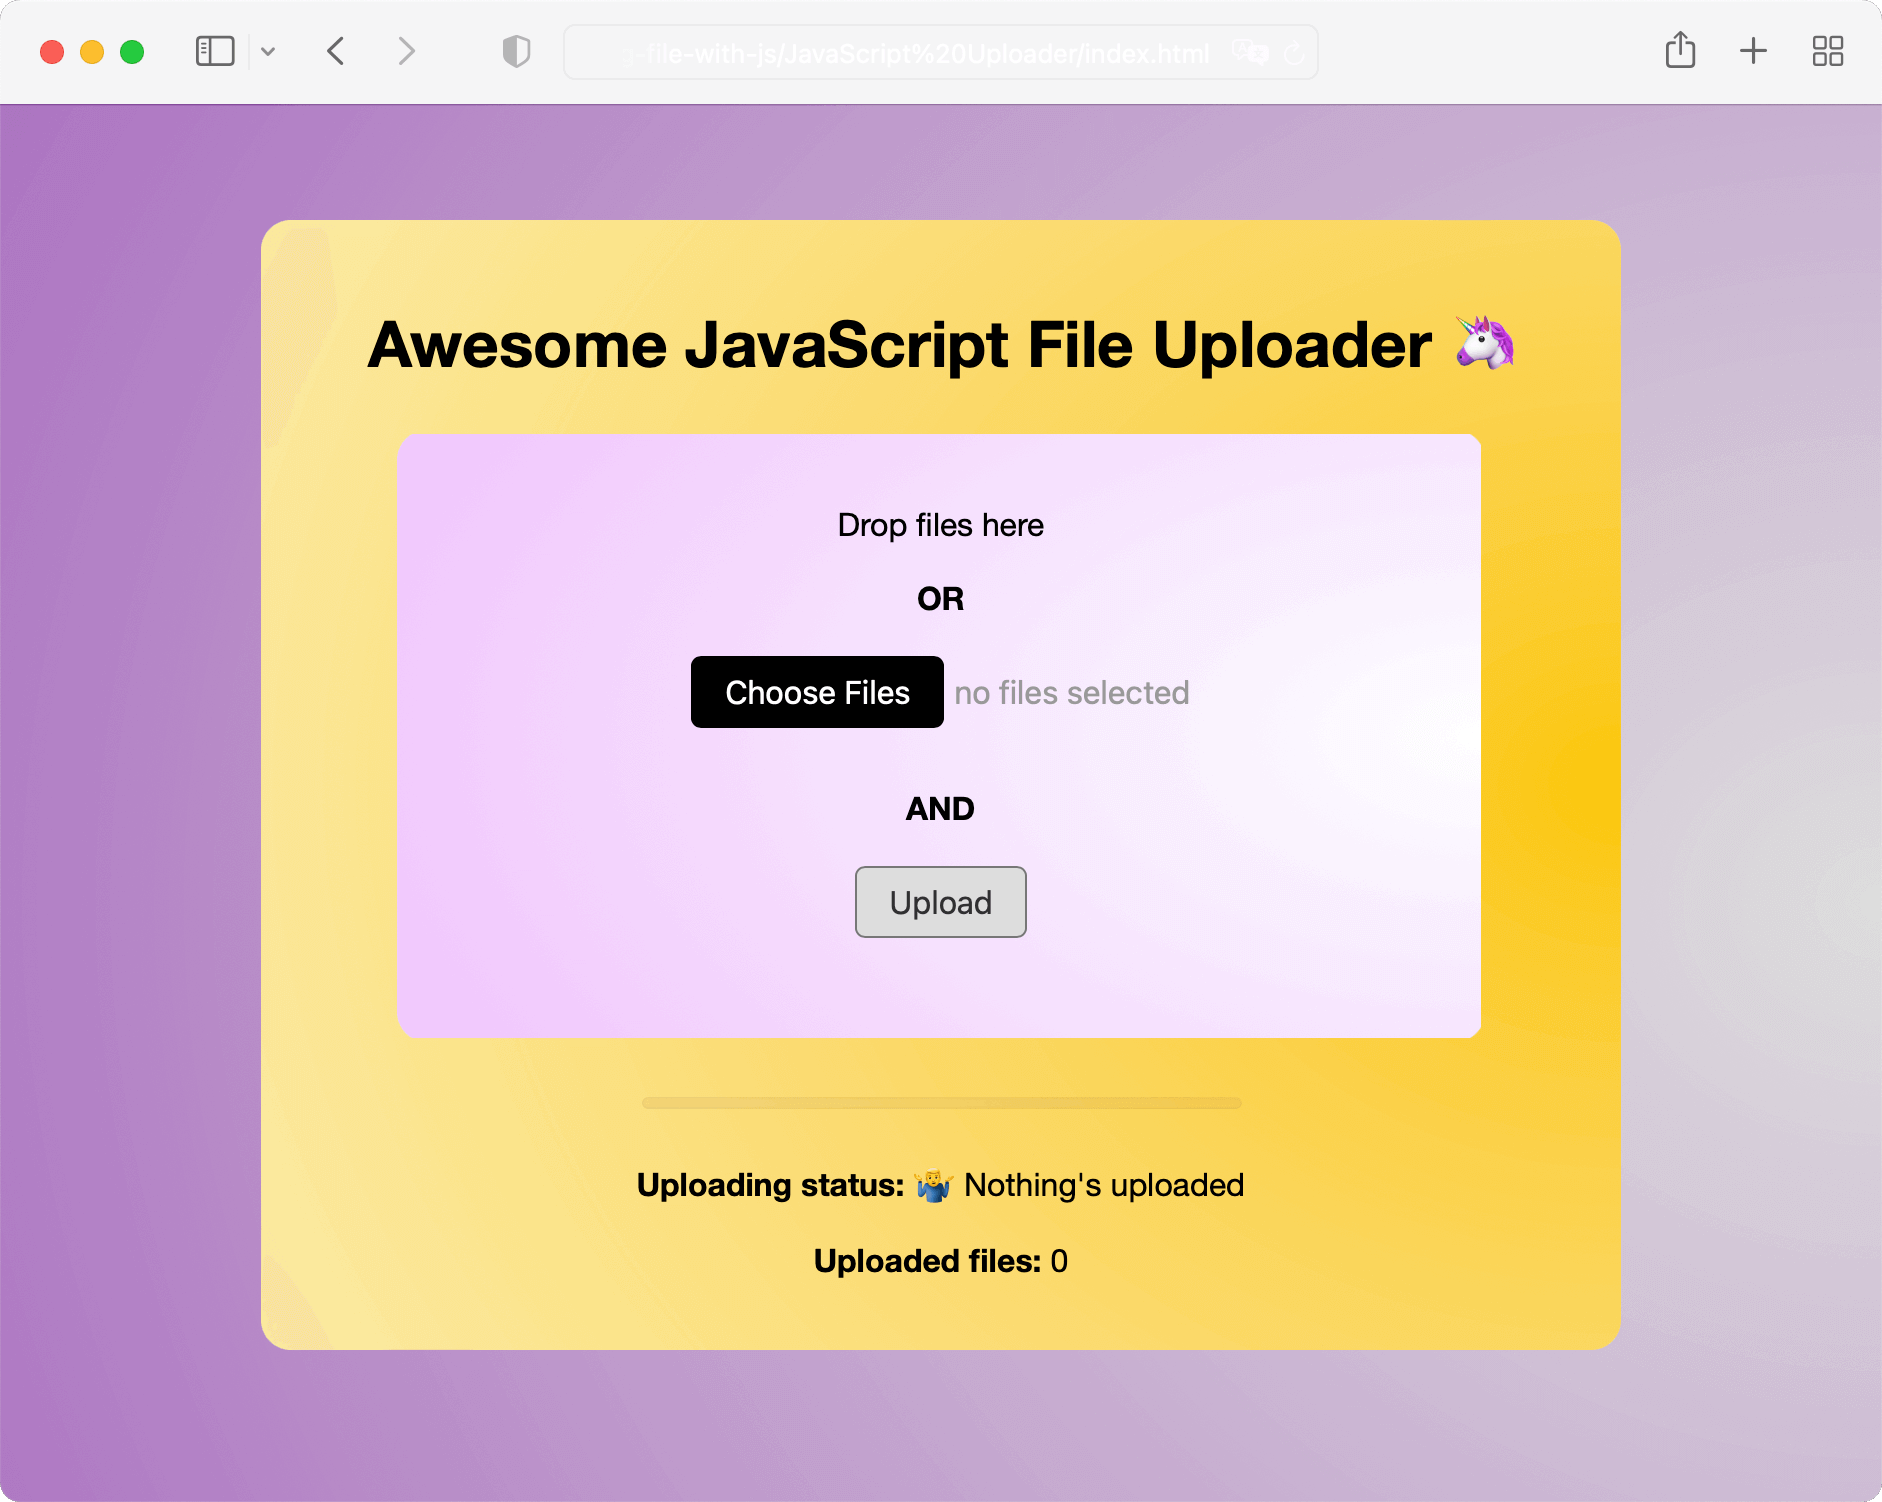 File uploader with JavaScript